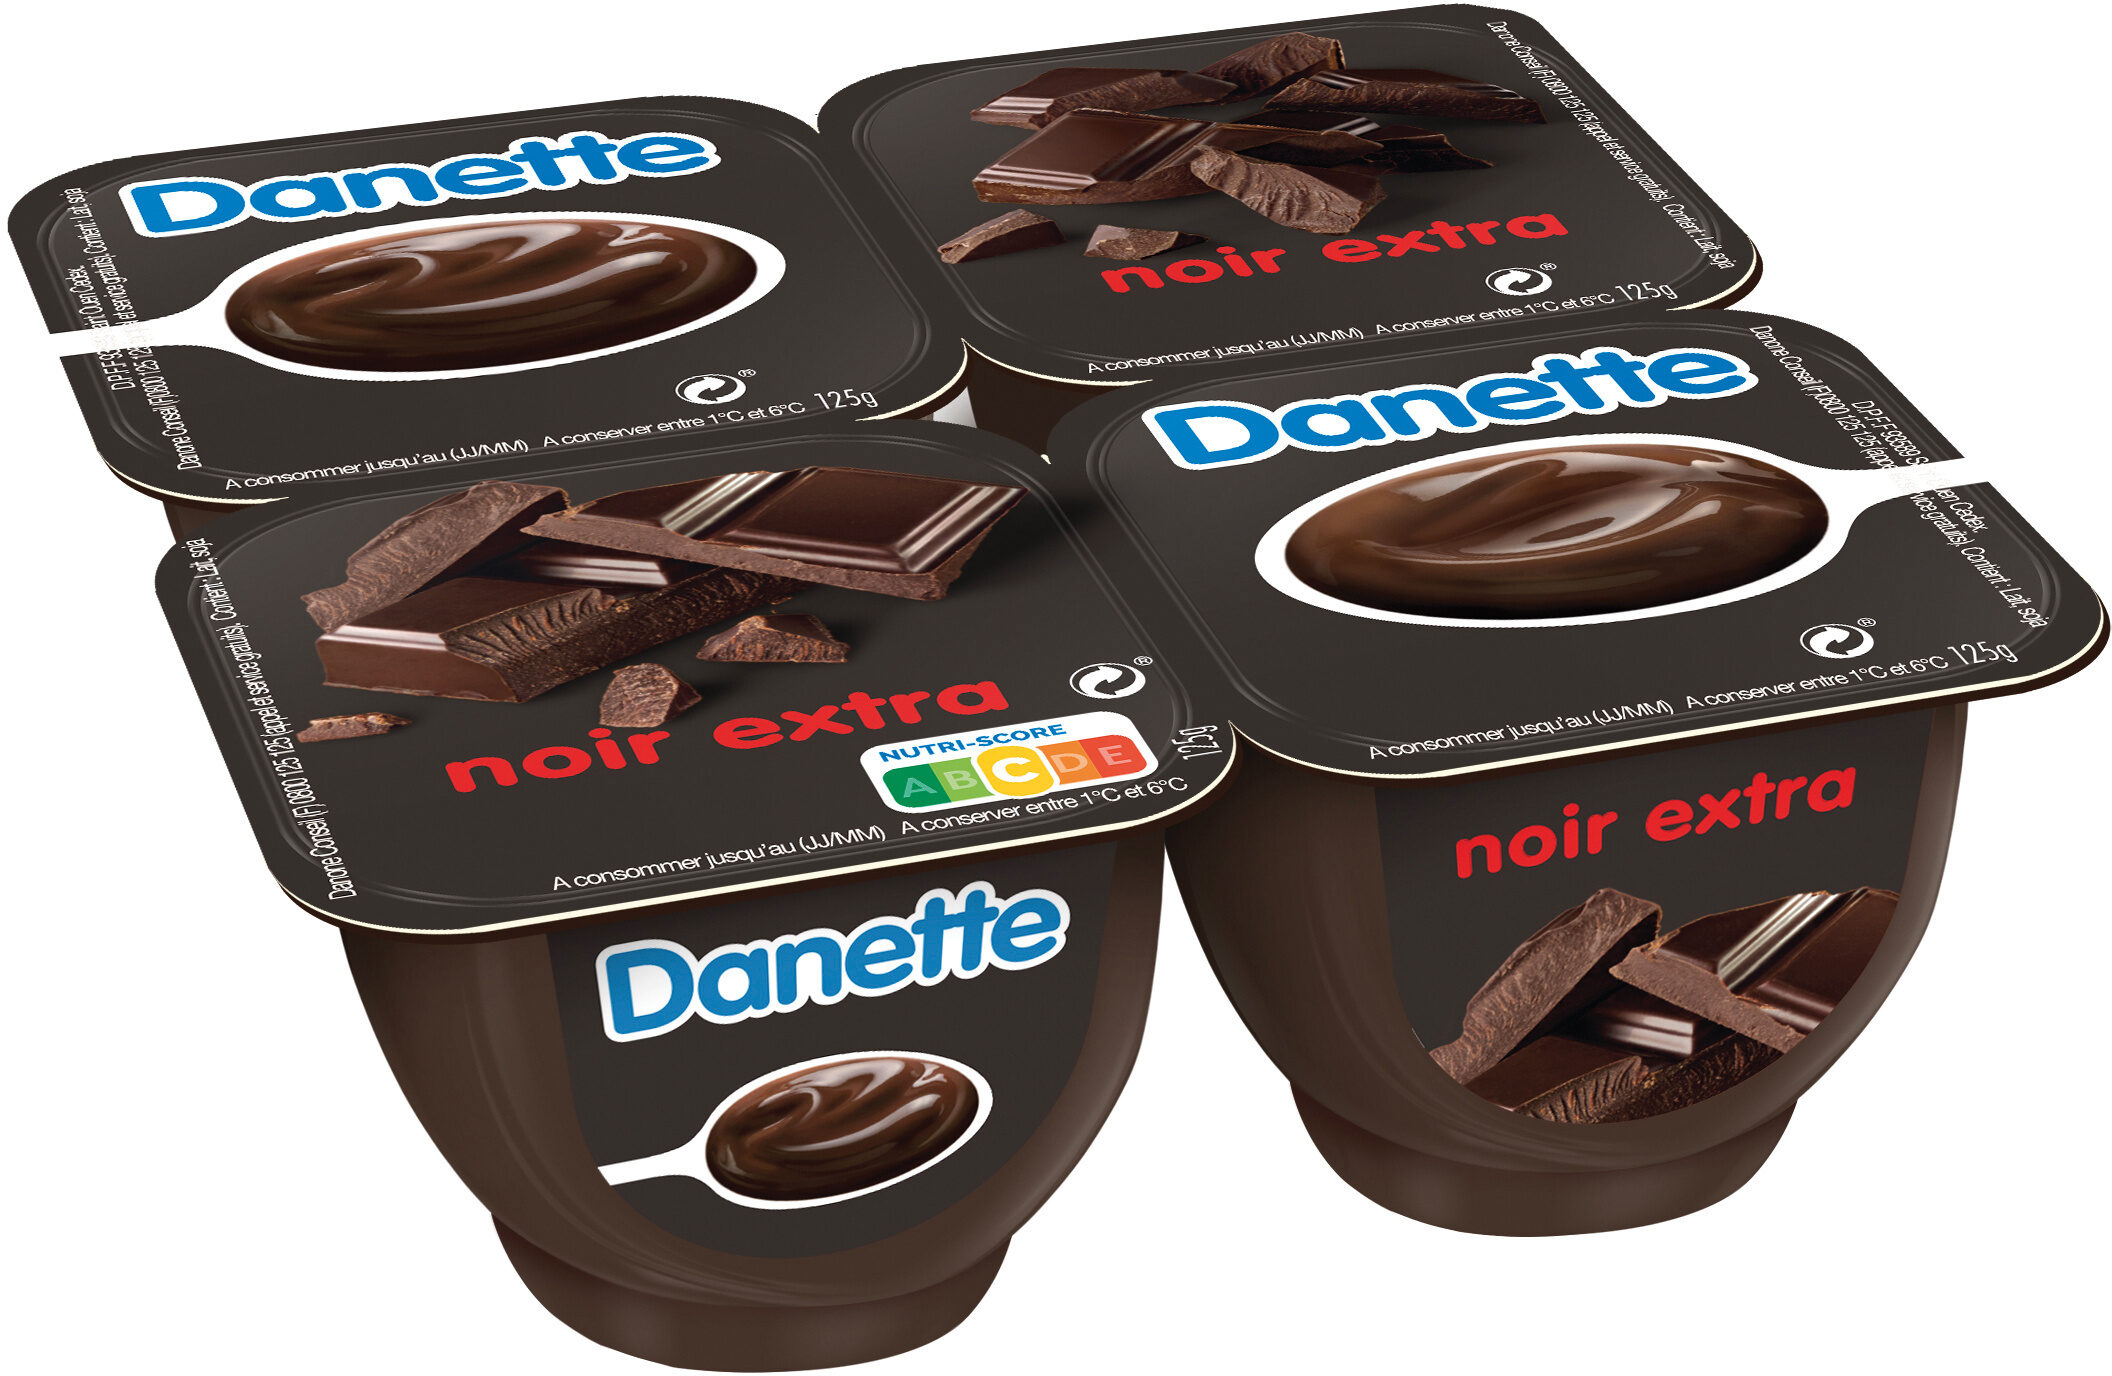 Danette creme dessert noir extra 125 g x 4 - Produit